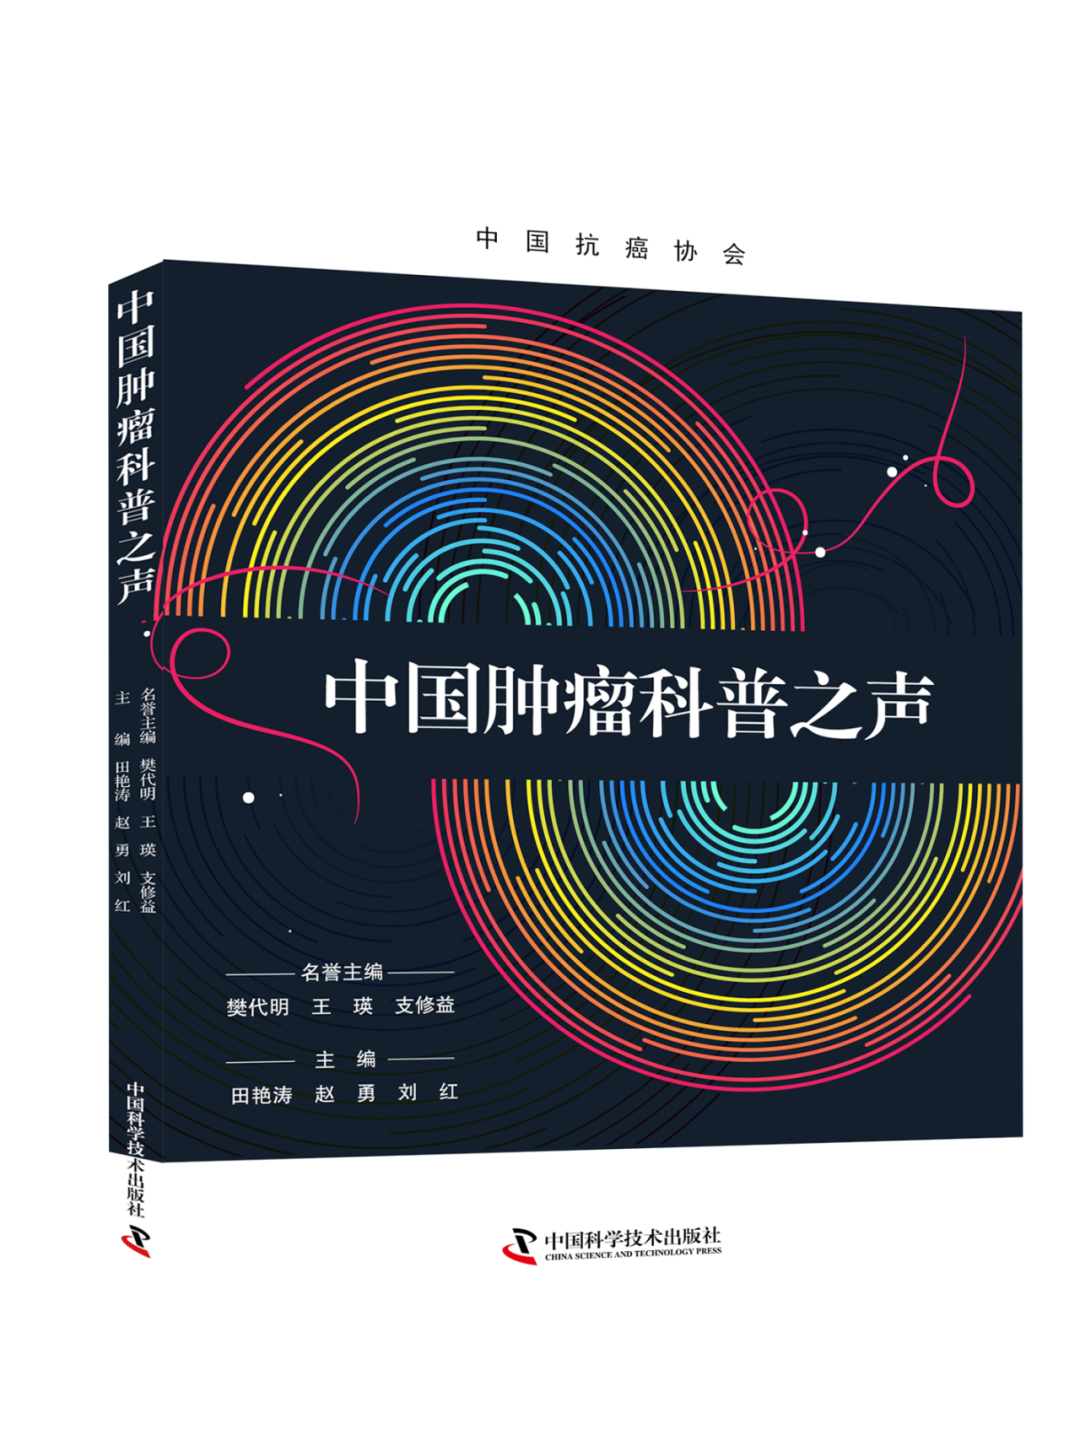 田艳涛等教授主编《中国肿瘤科普之声》正式出版，推动肿瘤科普工作